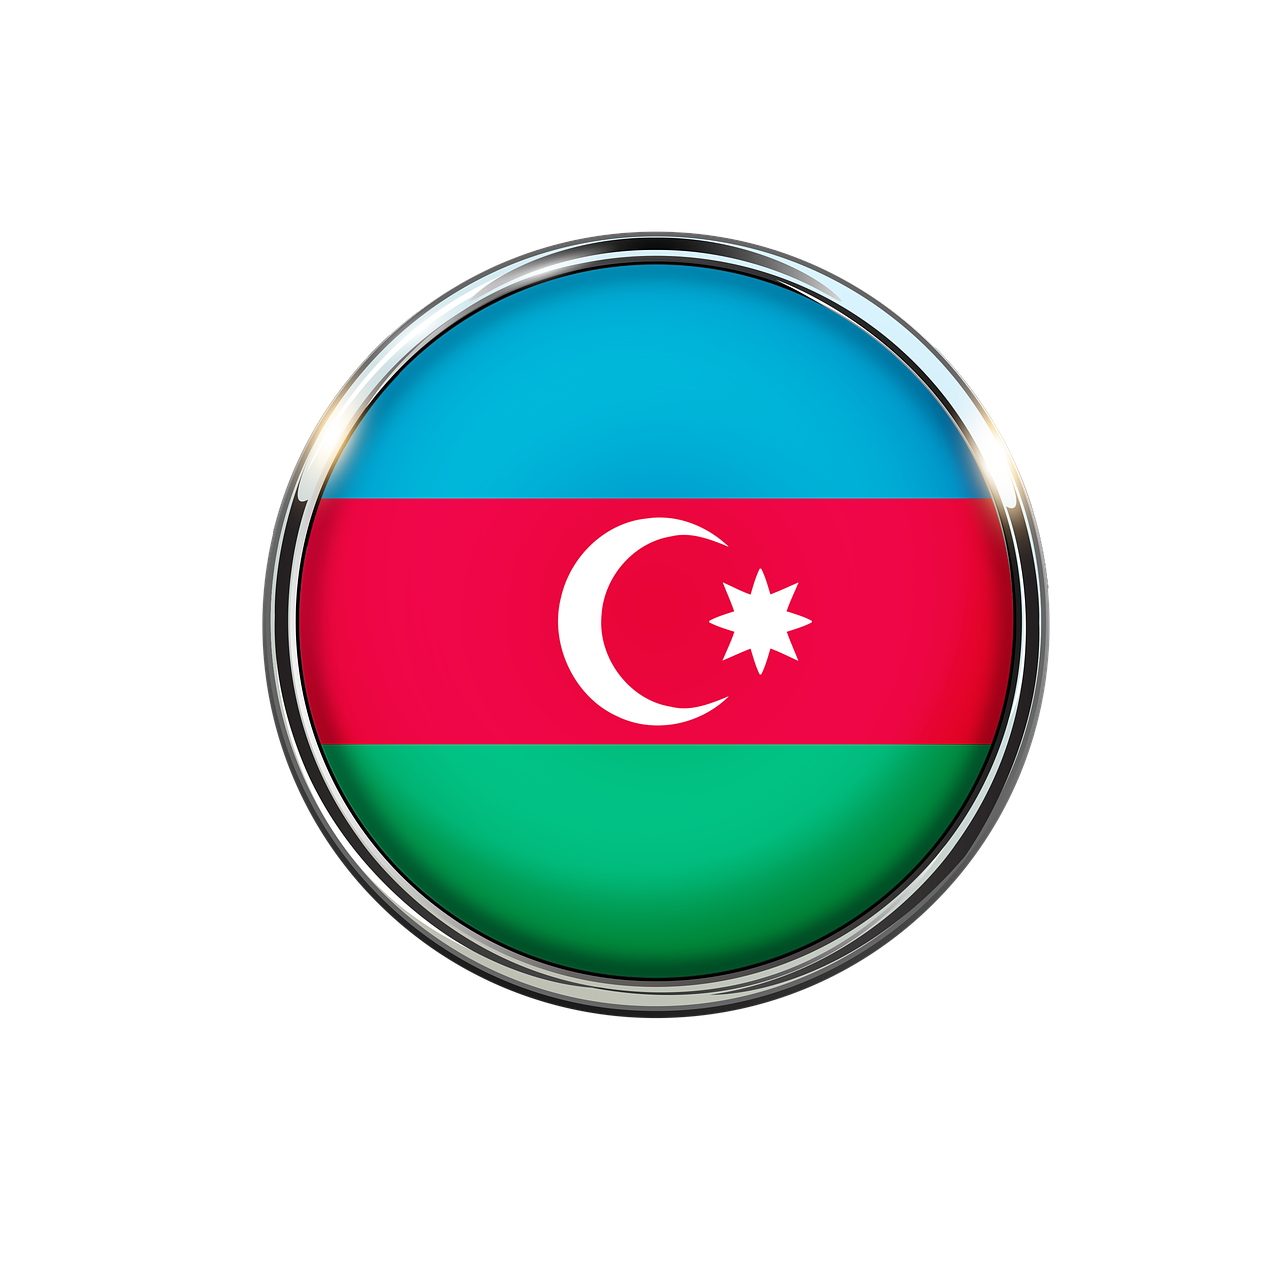 azerbaijan  flag  symbol free photo